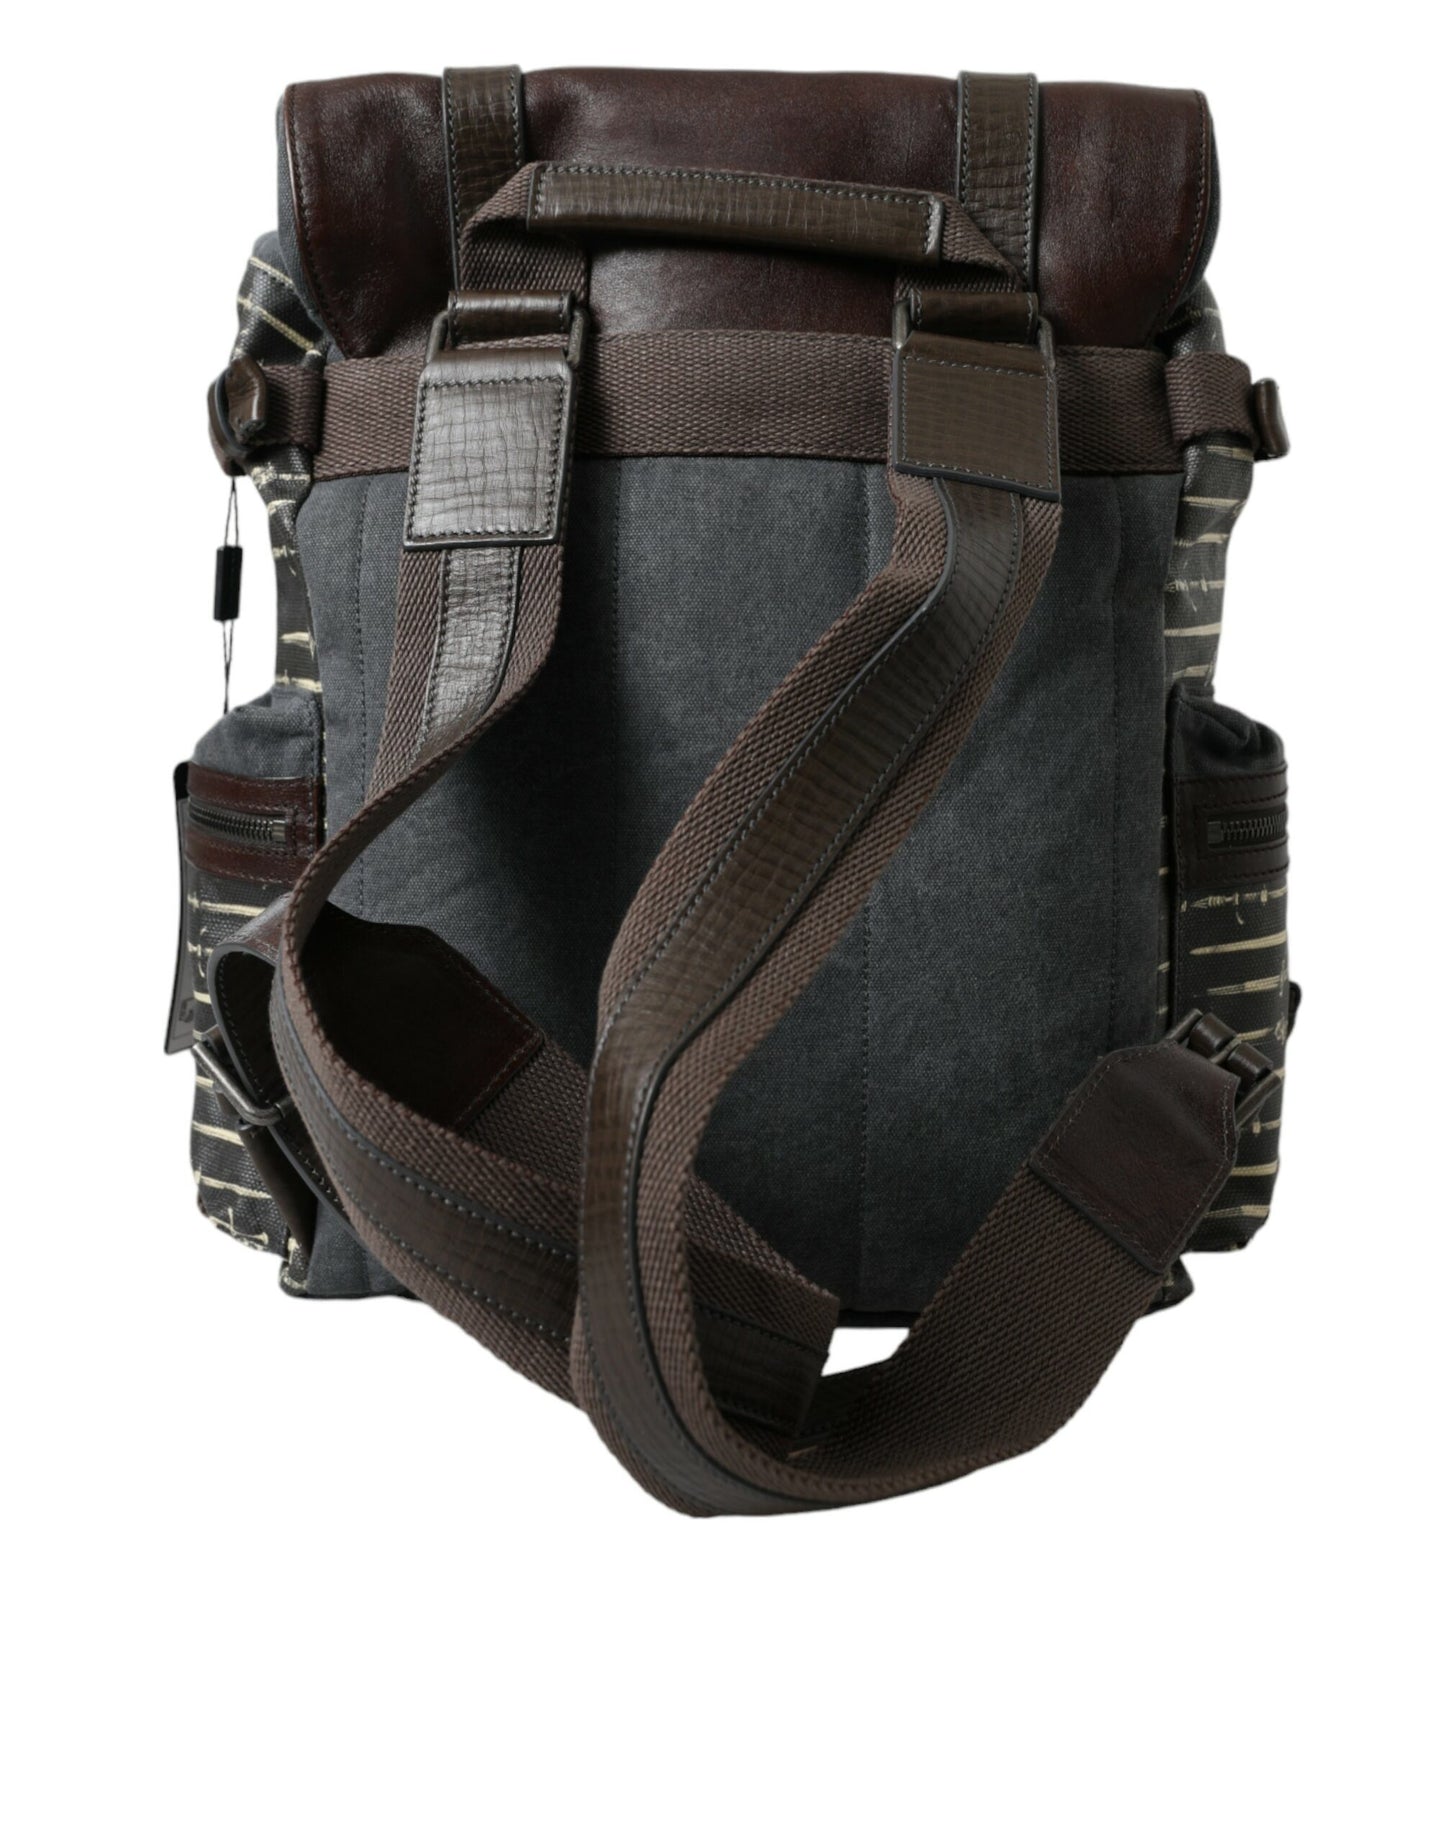 Black Brown Canvas Leather Rucksack Backpack Bag